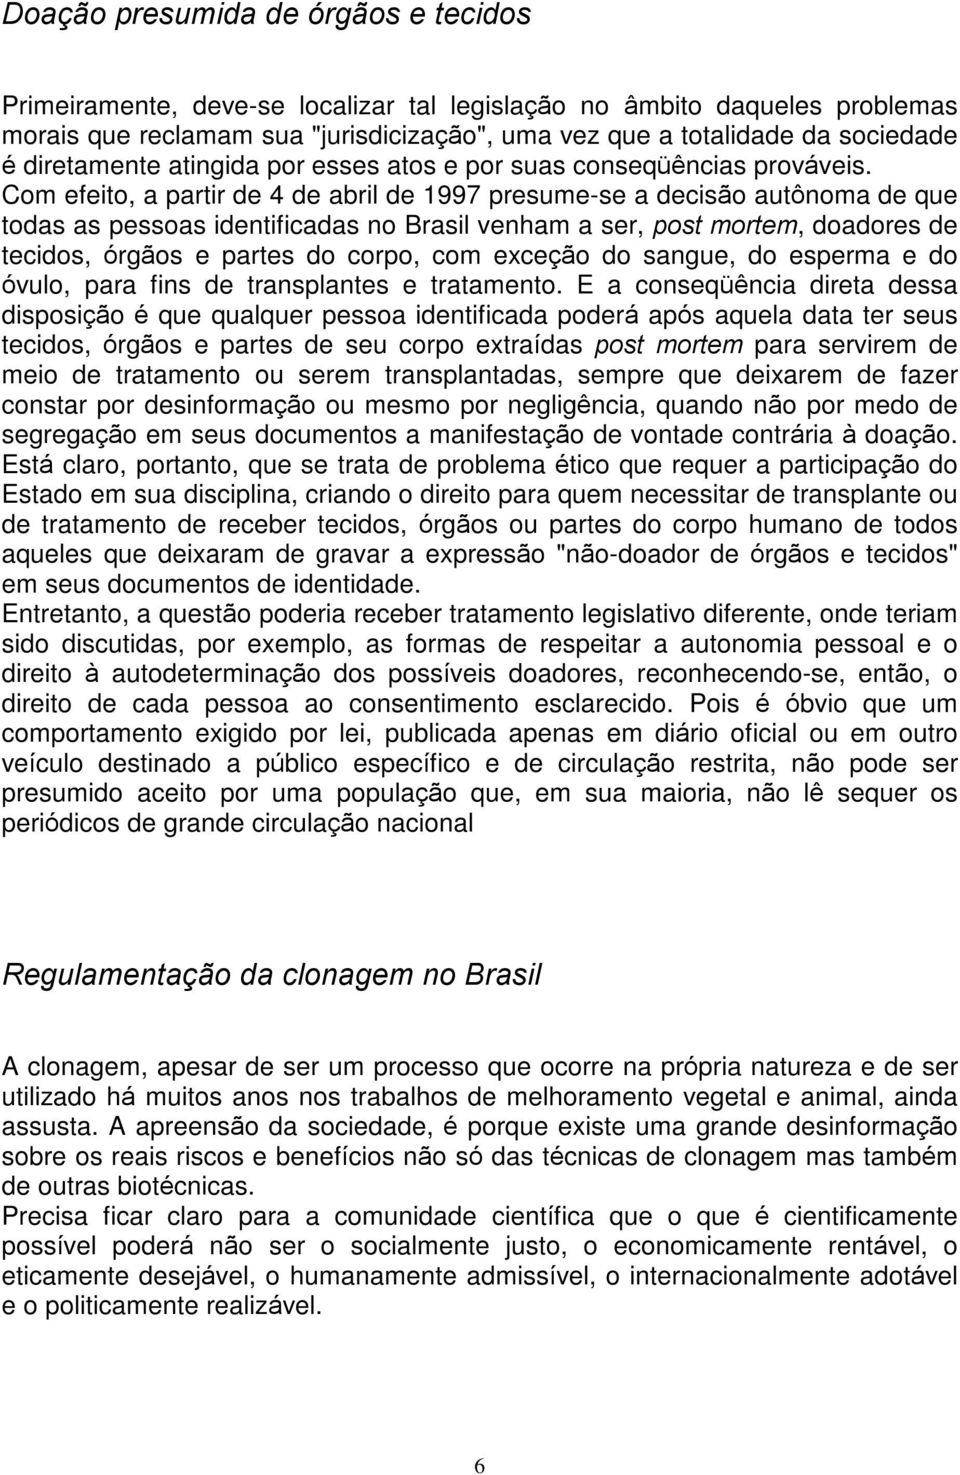 Com efeito, a partir de 4 de abril de 1997 presume-se a decisão autônoma de que todas as pessoas identificadas no Brasil venham a ser, post mortem, doadores de tecidos, órgãos e partes do corpo, com